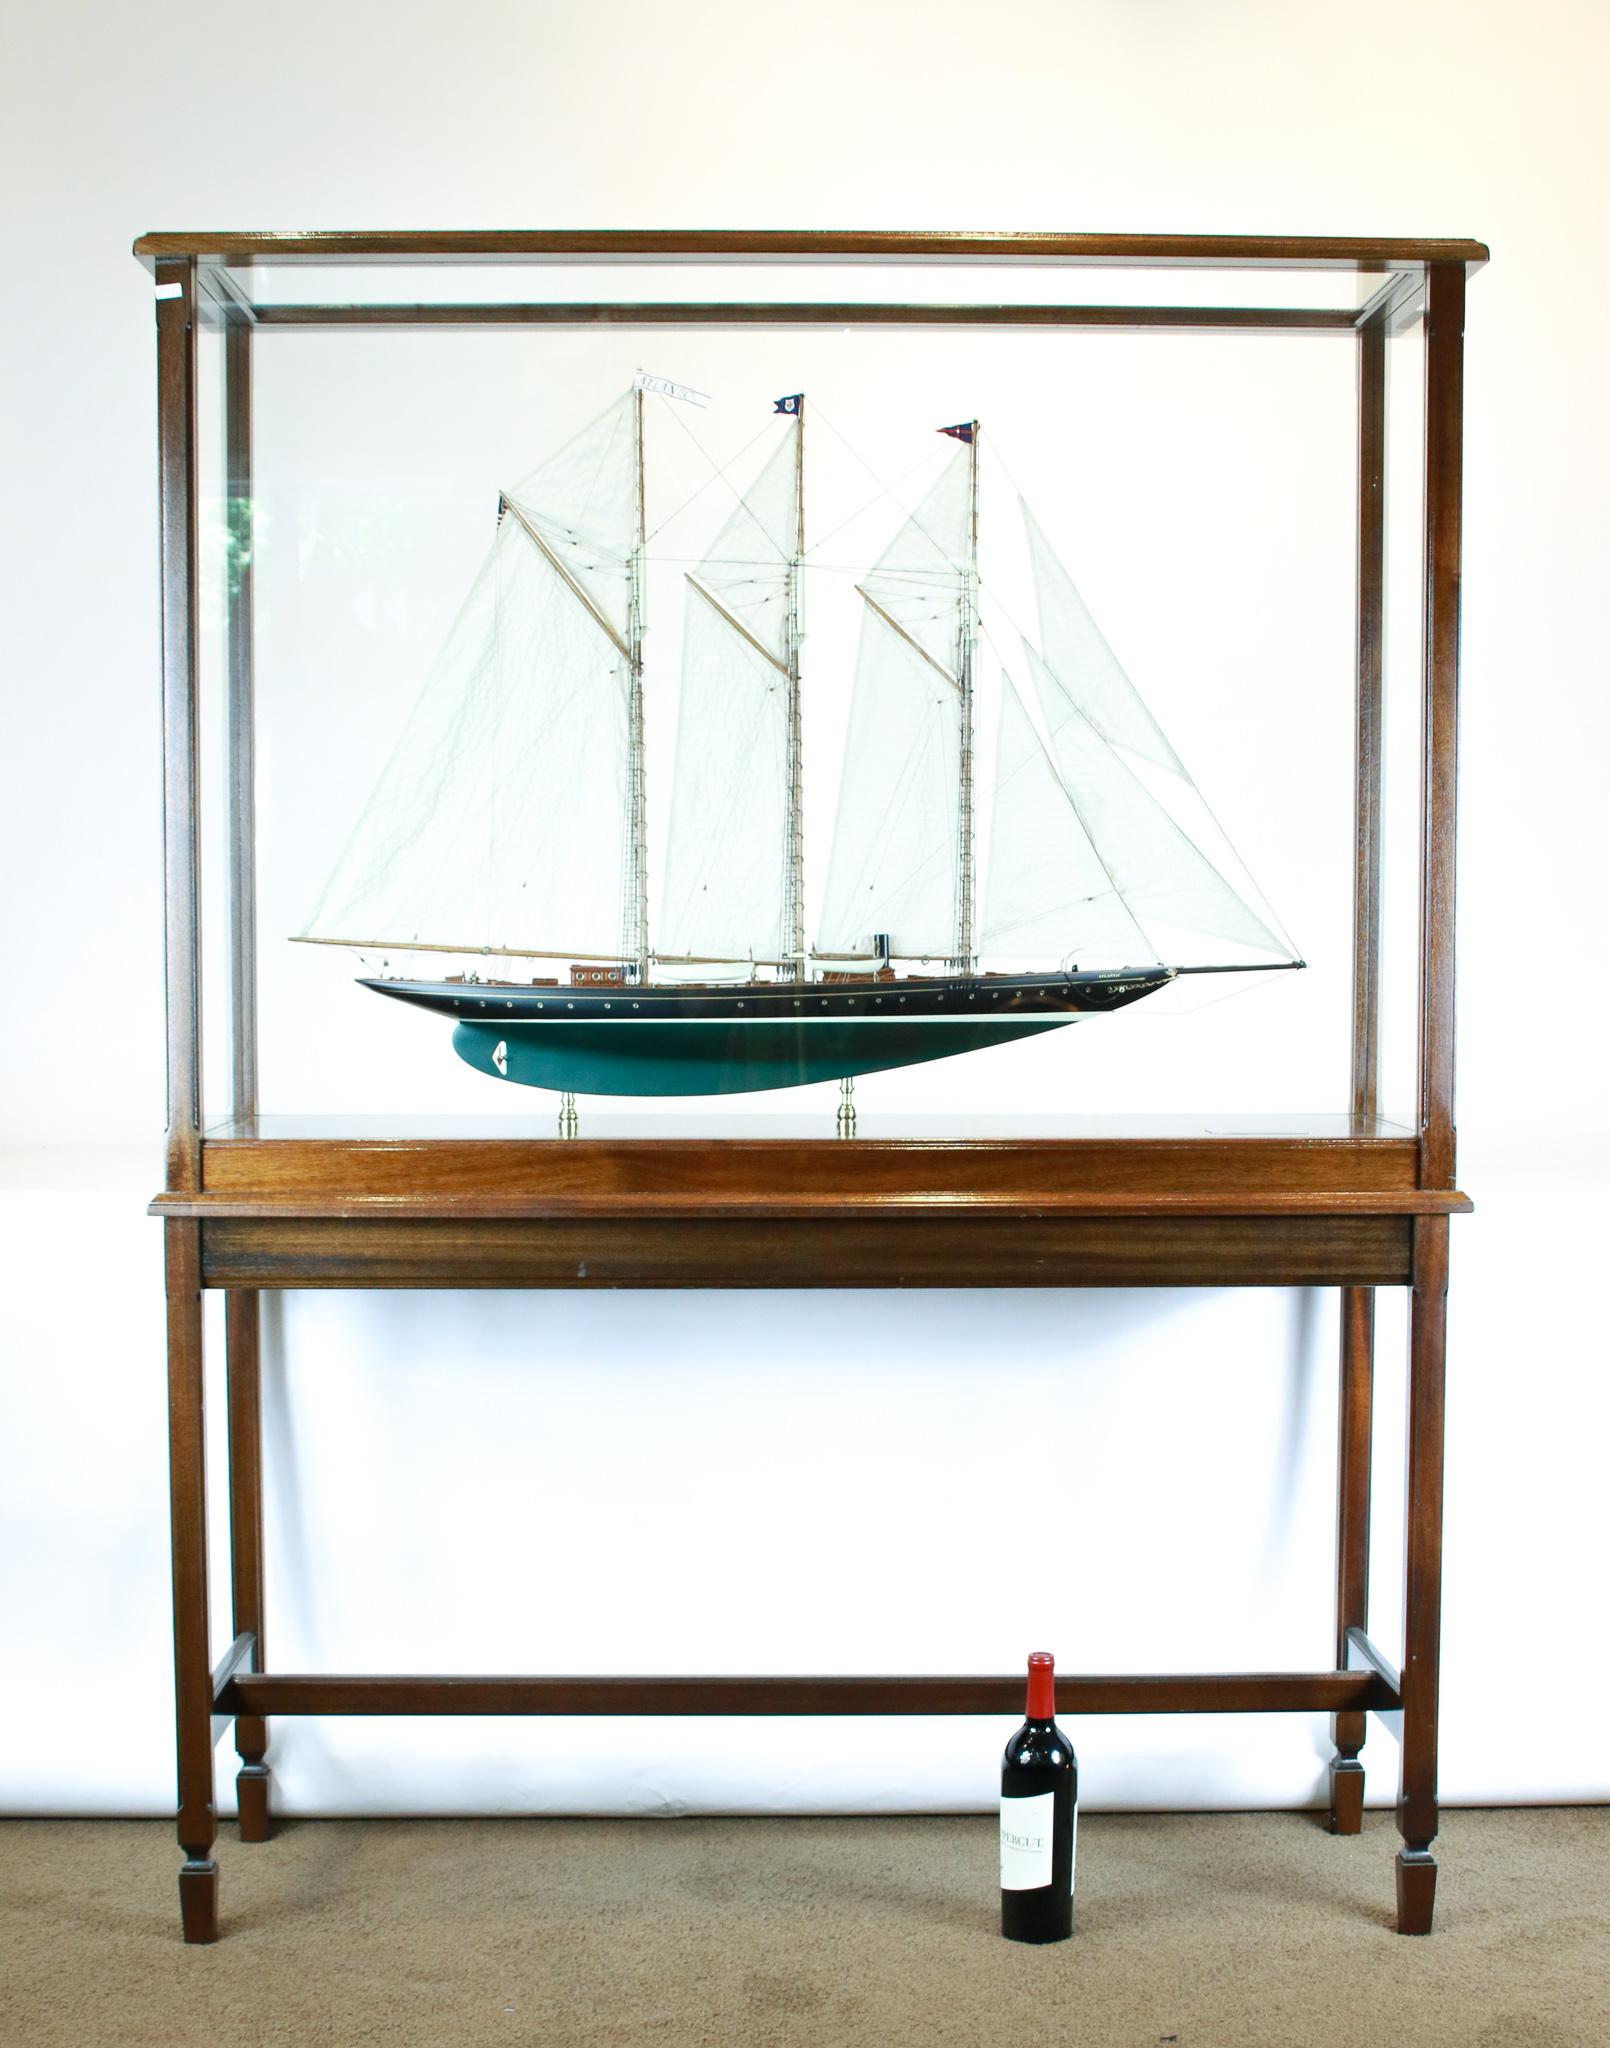 topsail schooner for sale